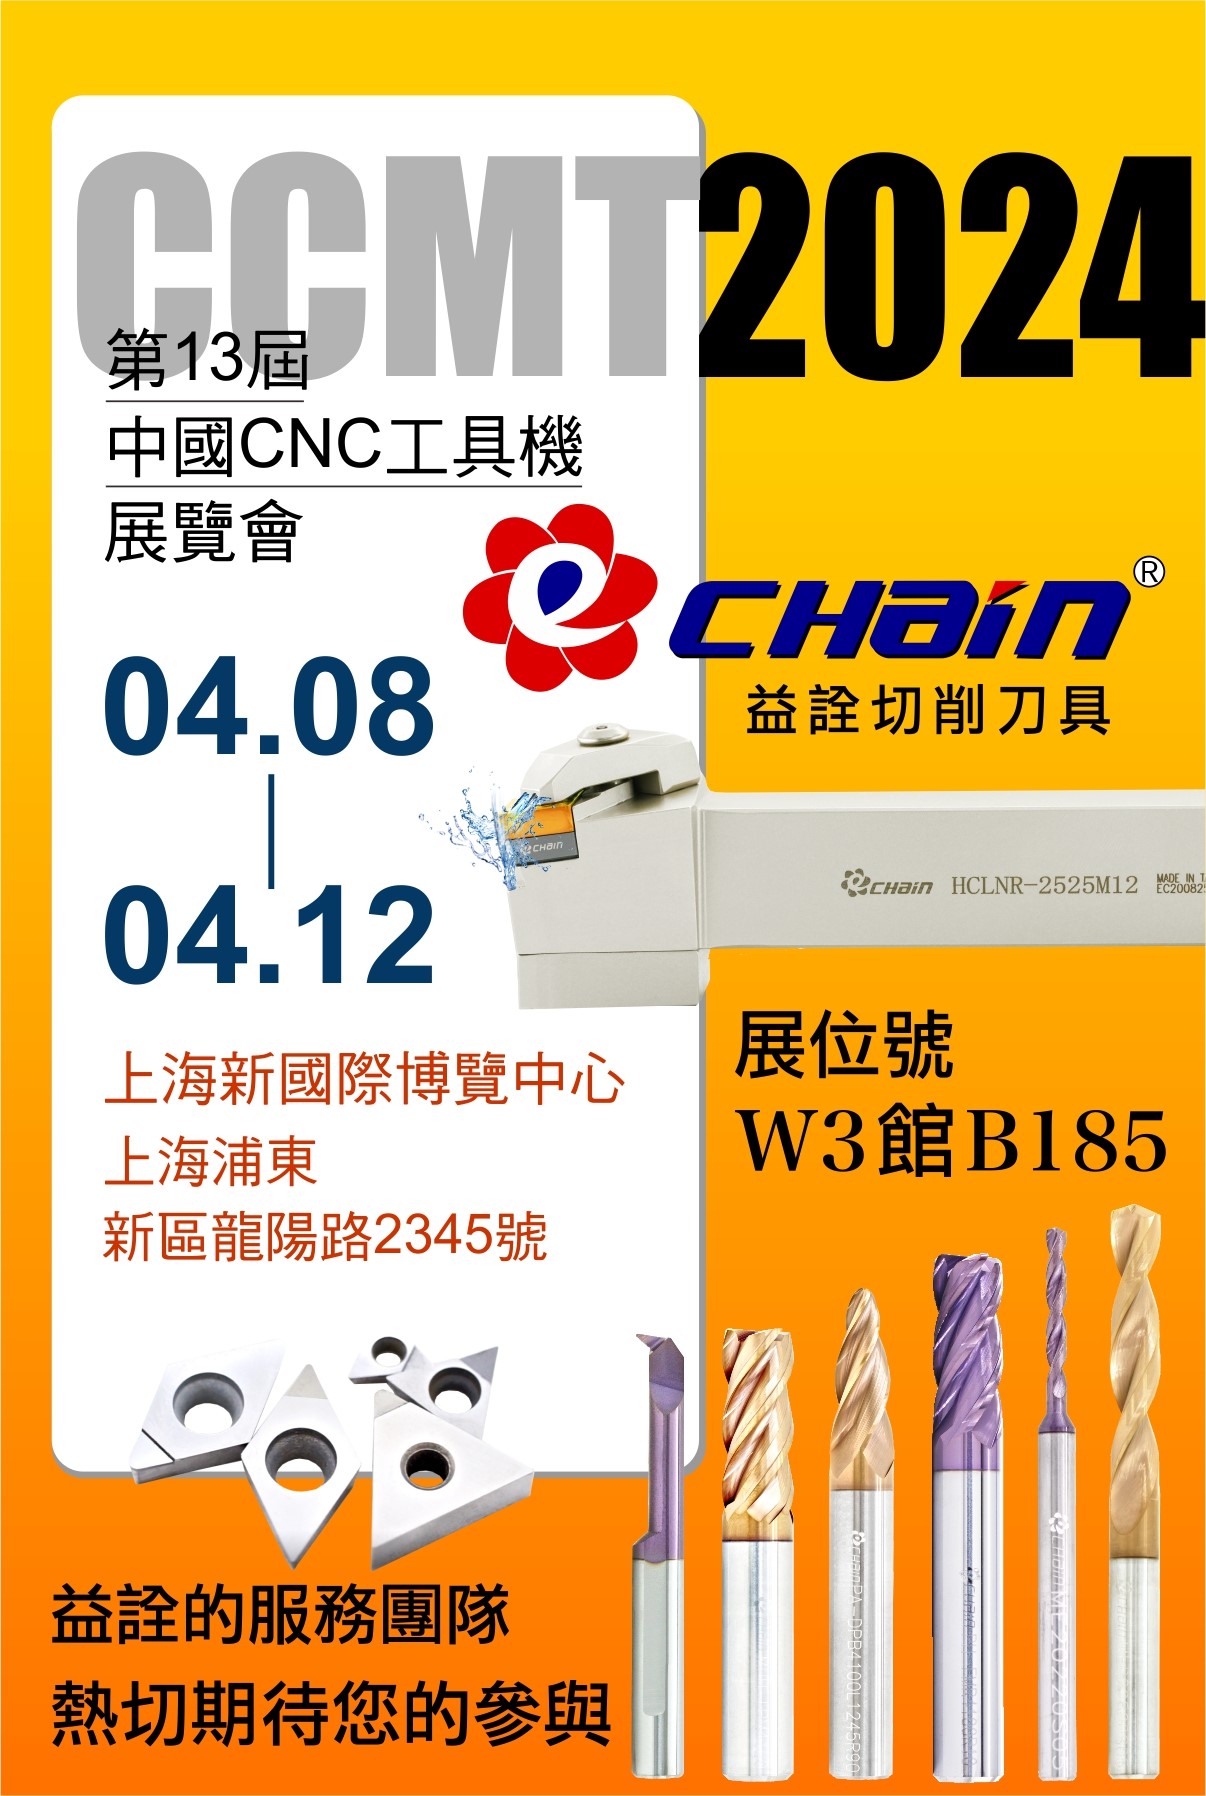 CCMT2024与益诠精密(股)公司在中国上海